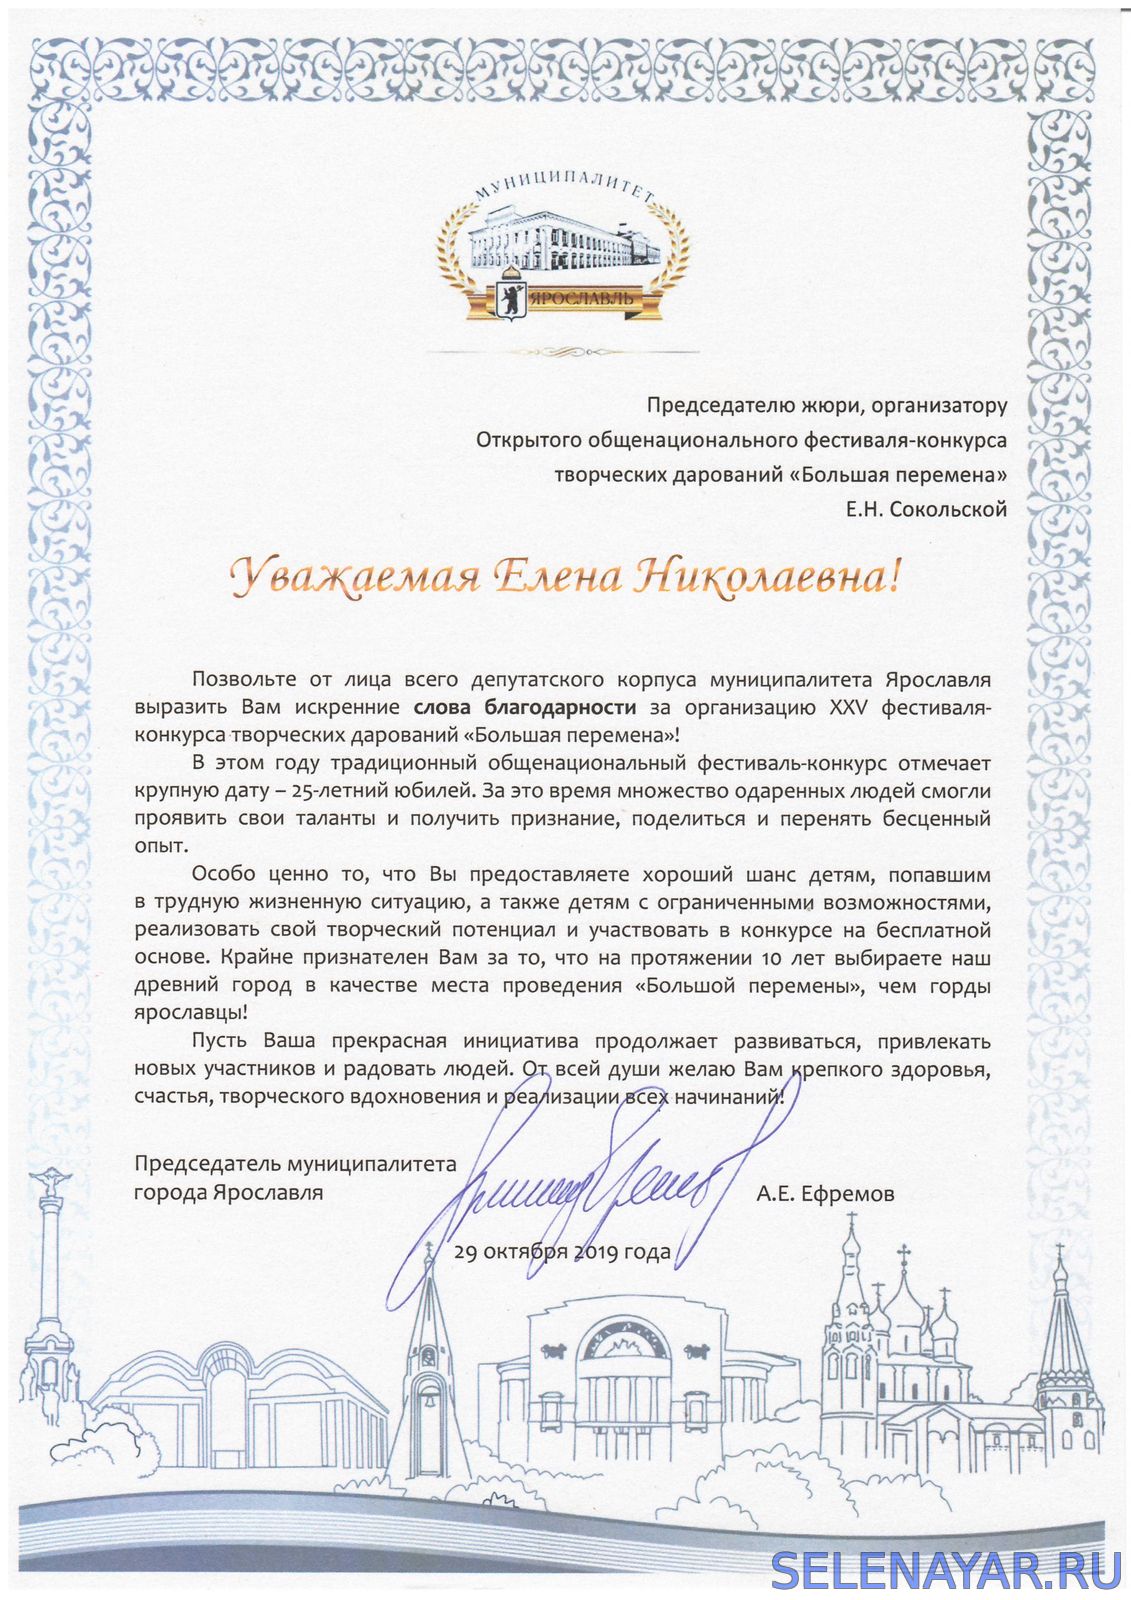 Благодарственное письмо от Председатель муниципалитета Артура Ефремова